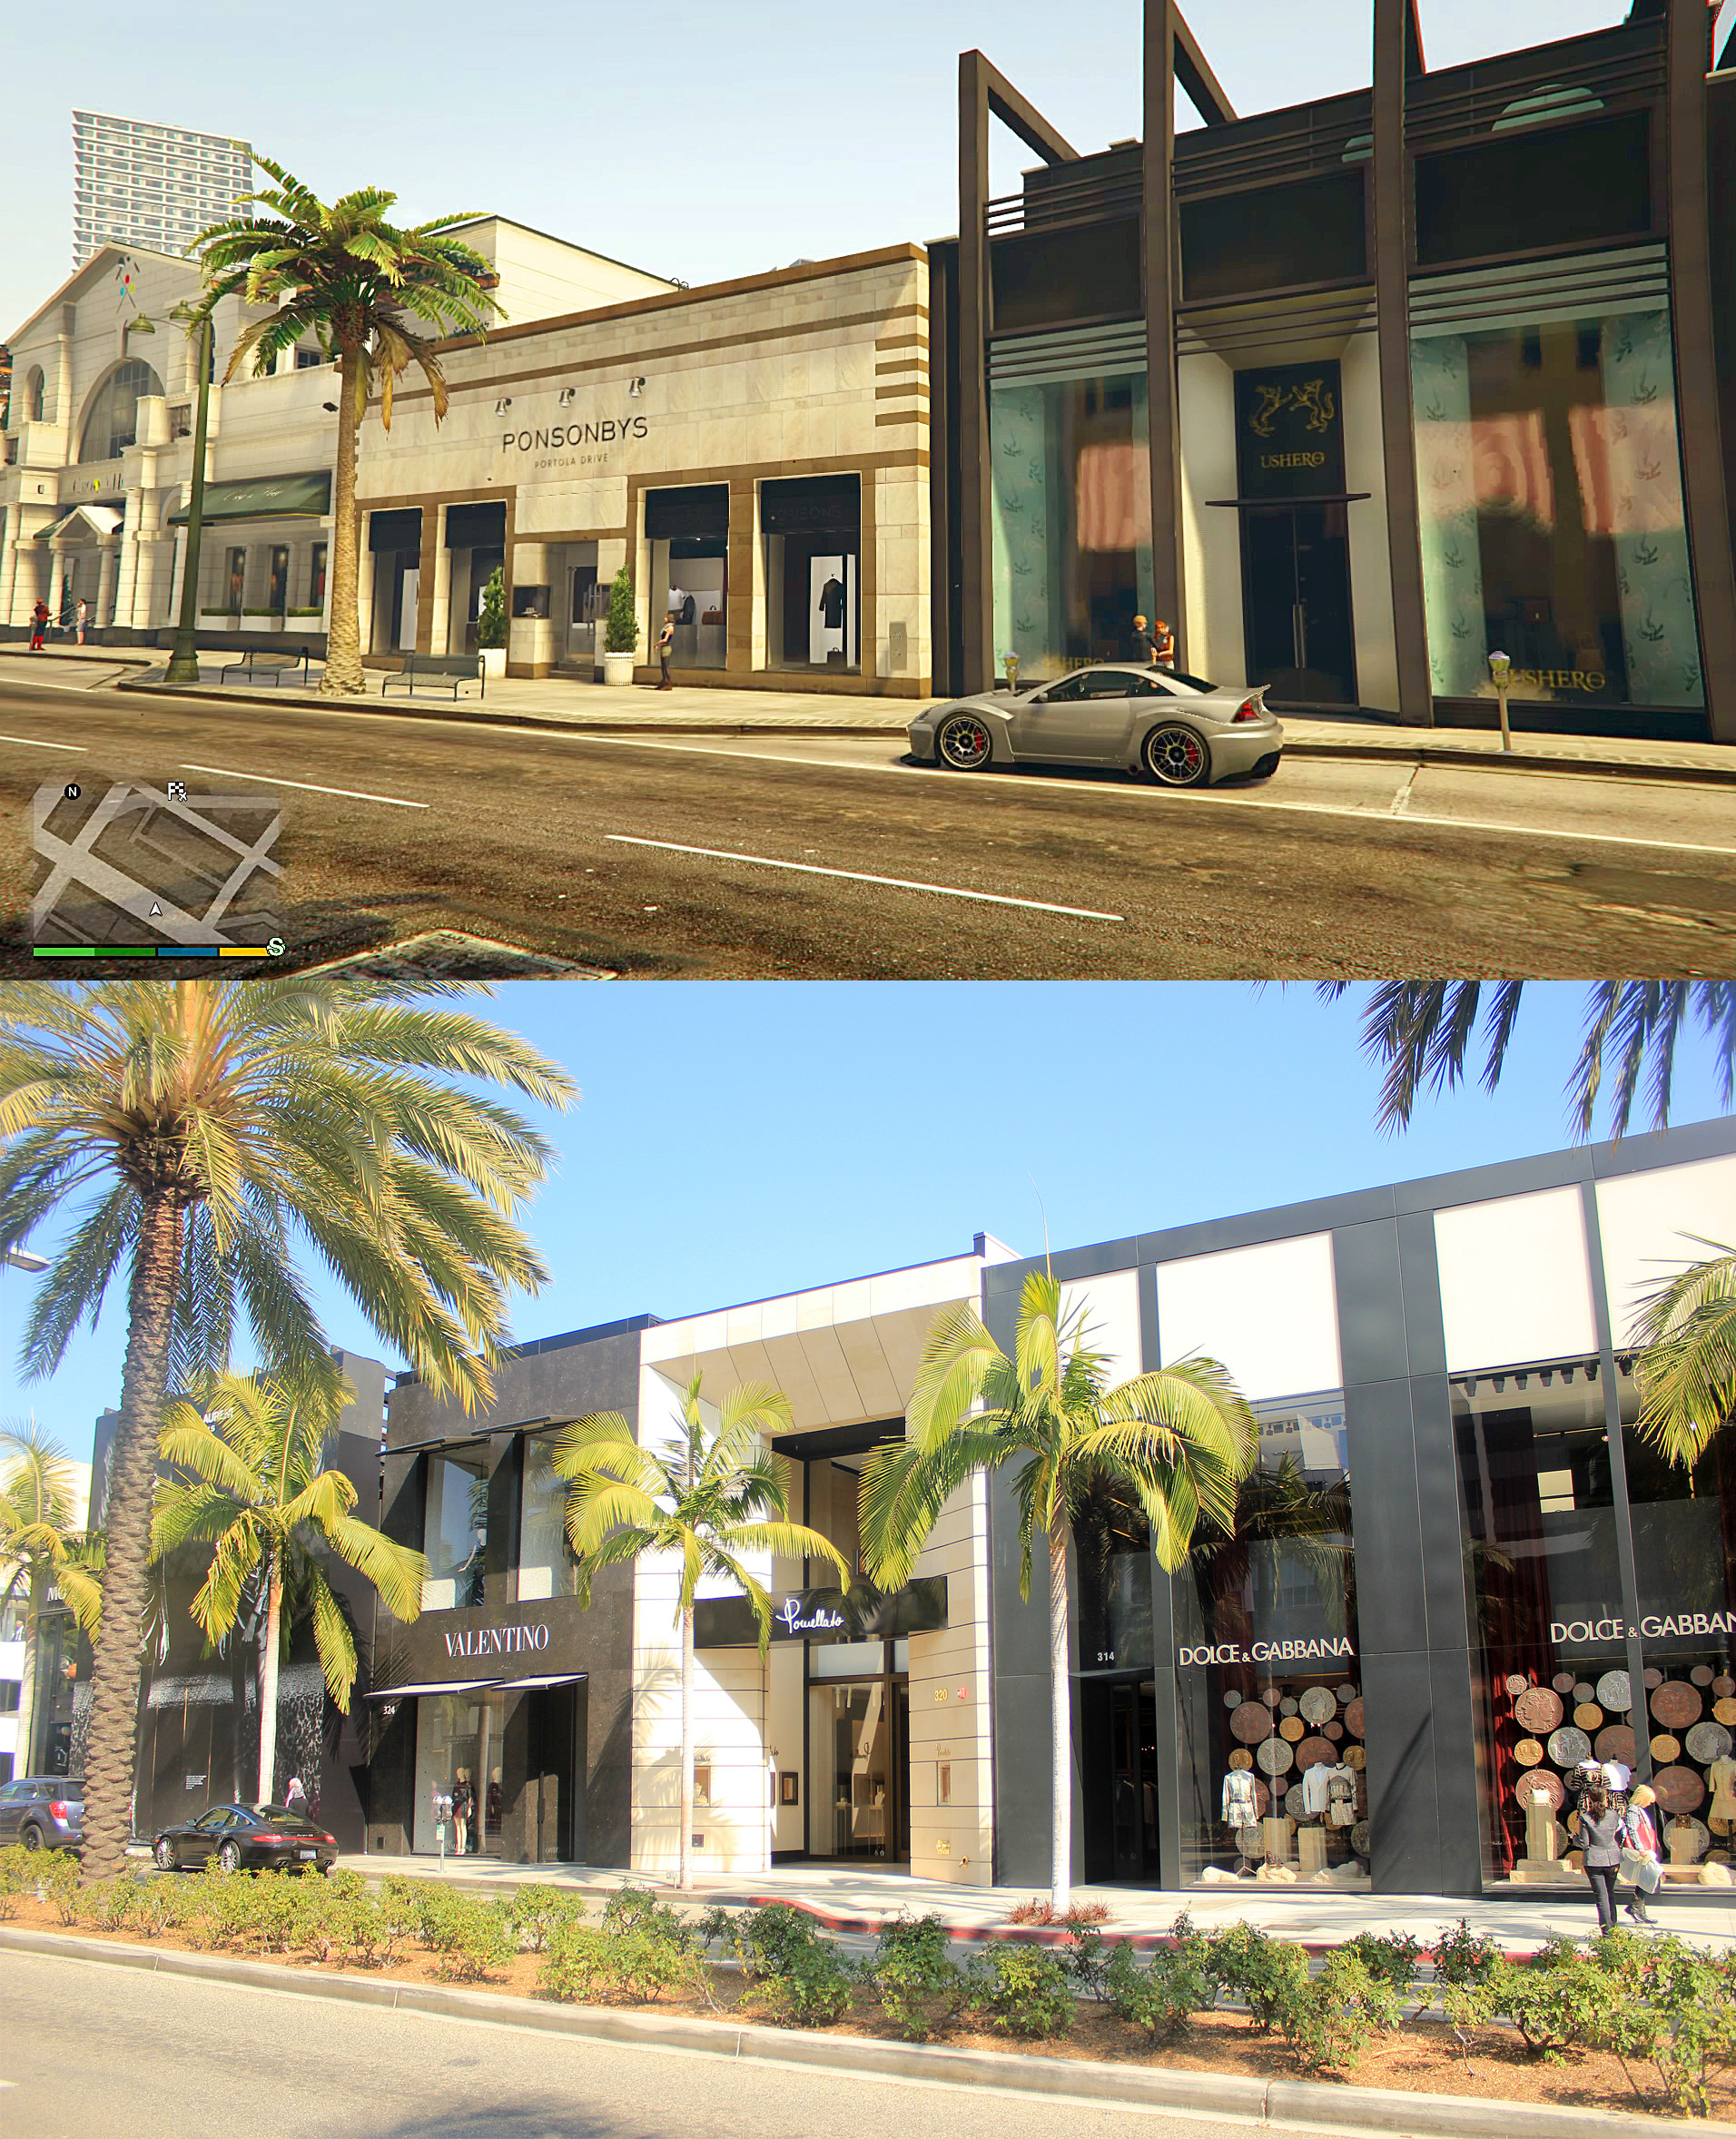 GTA V Los Santos vs Real Life Los Angeles Comparison Screenshots